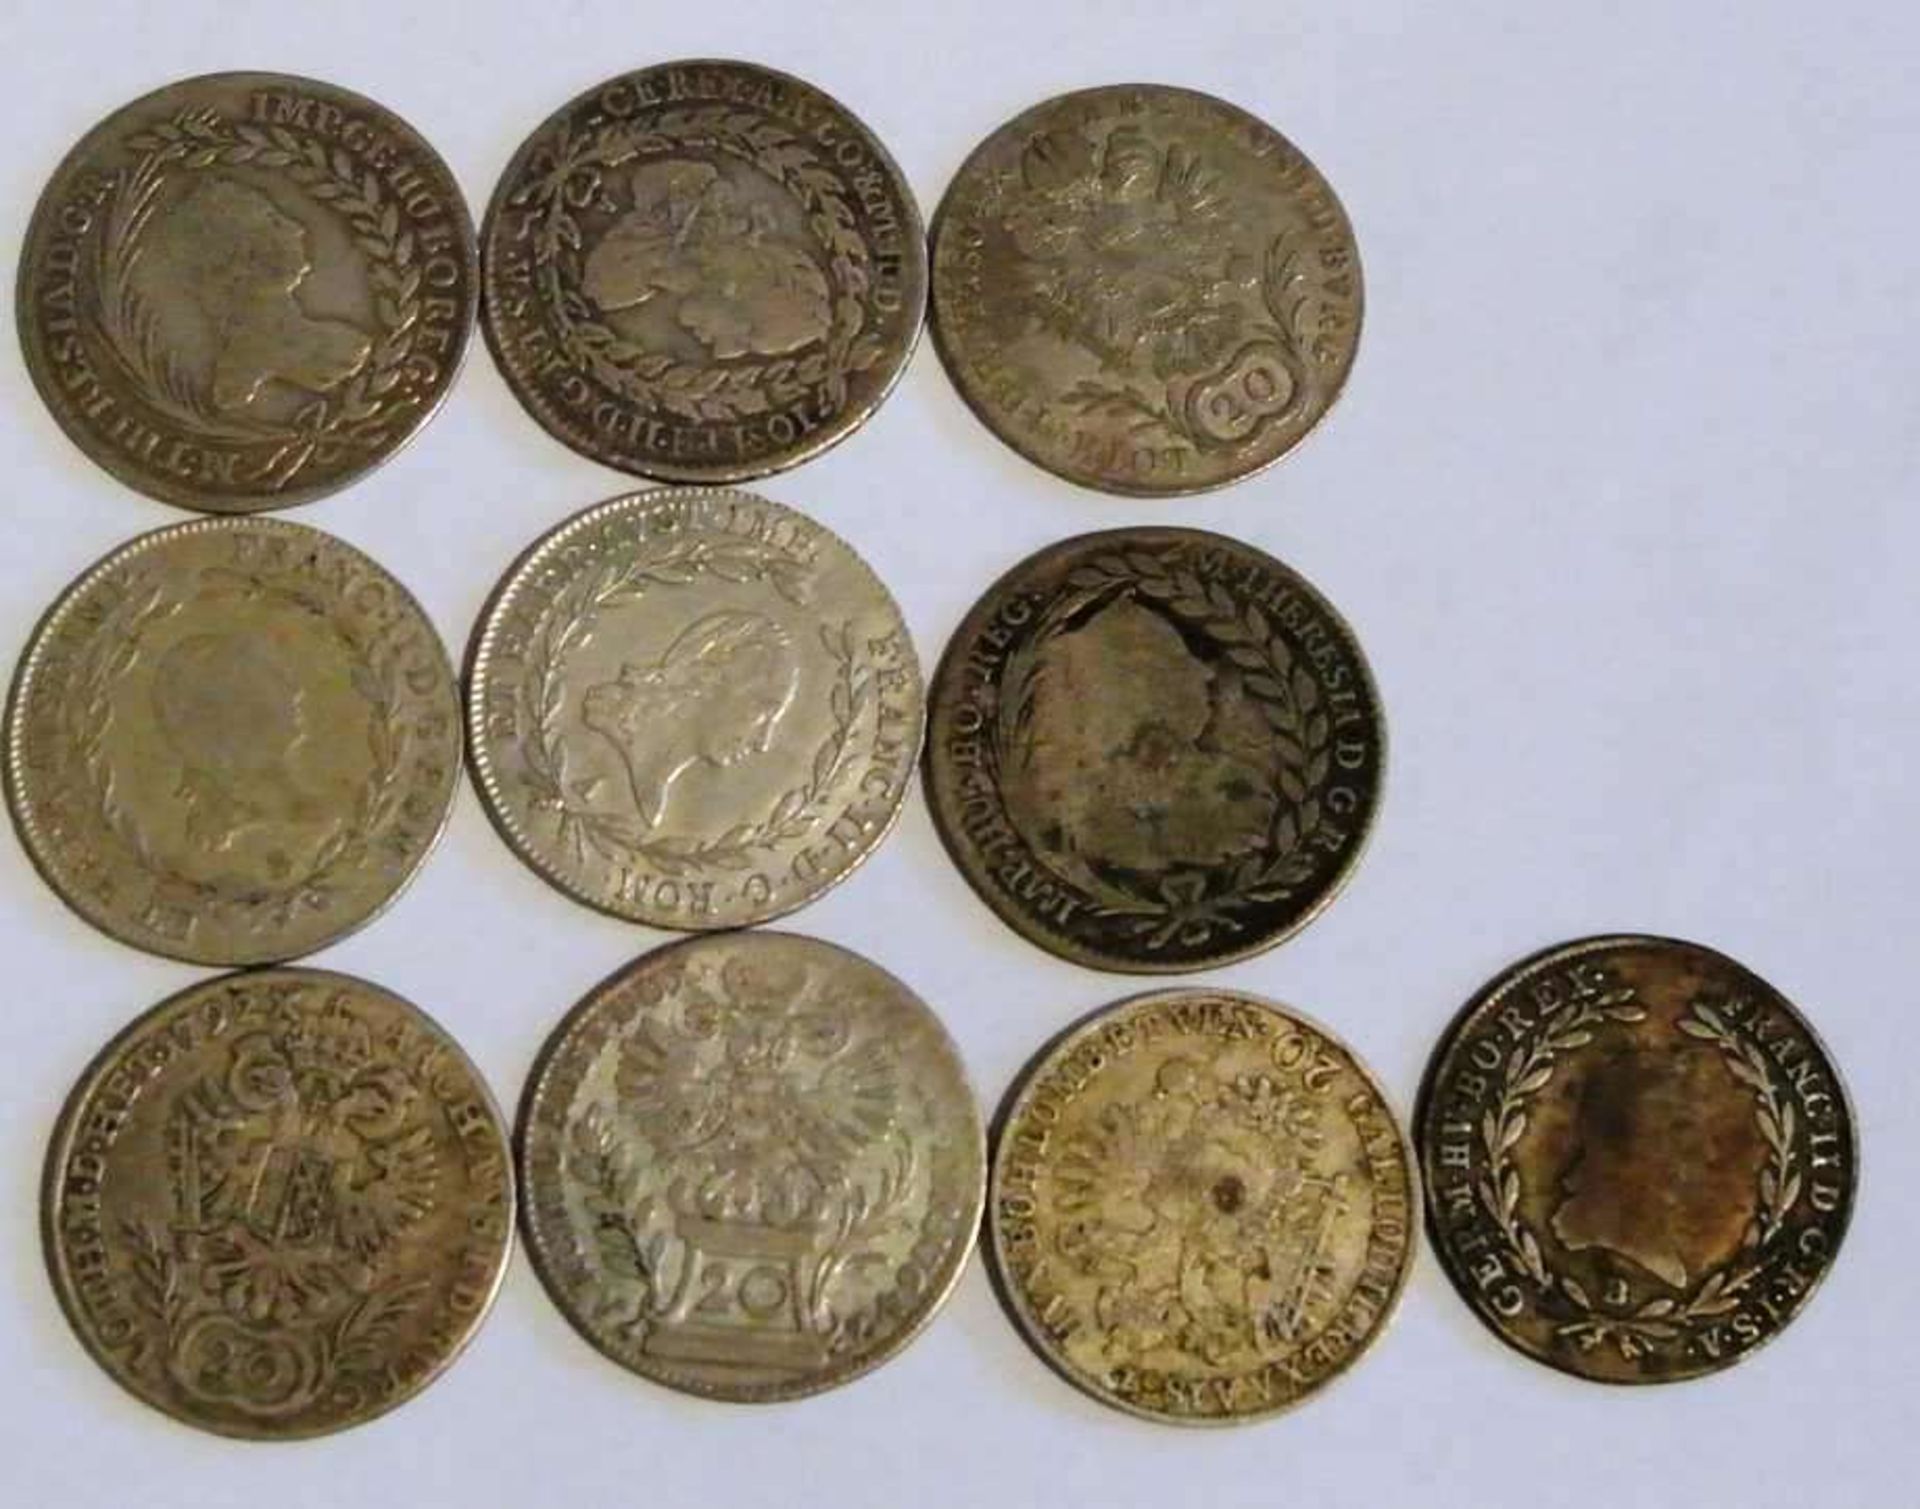 Lot Österreich Silbermünzen ab 1754, insgesamt 10 Stück, Erhaltung: schön - sehr schön+ - Bild 2 aus 2